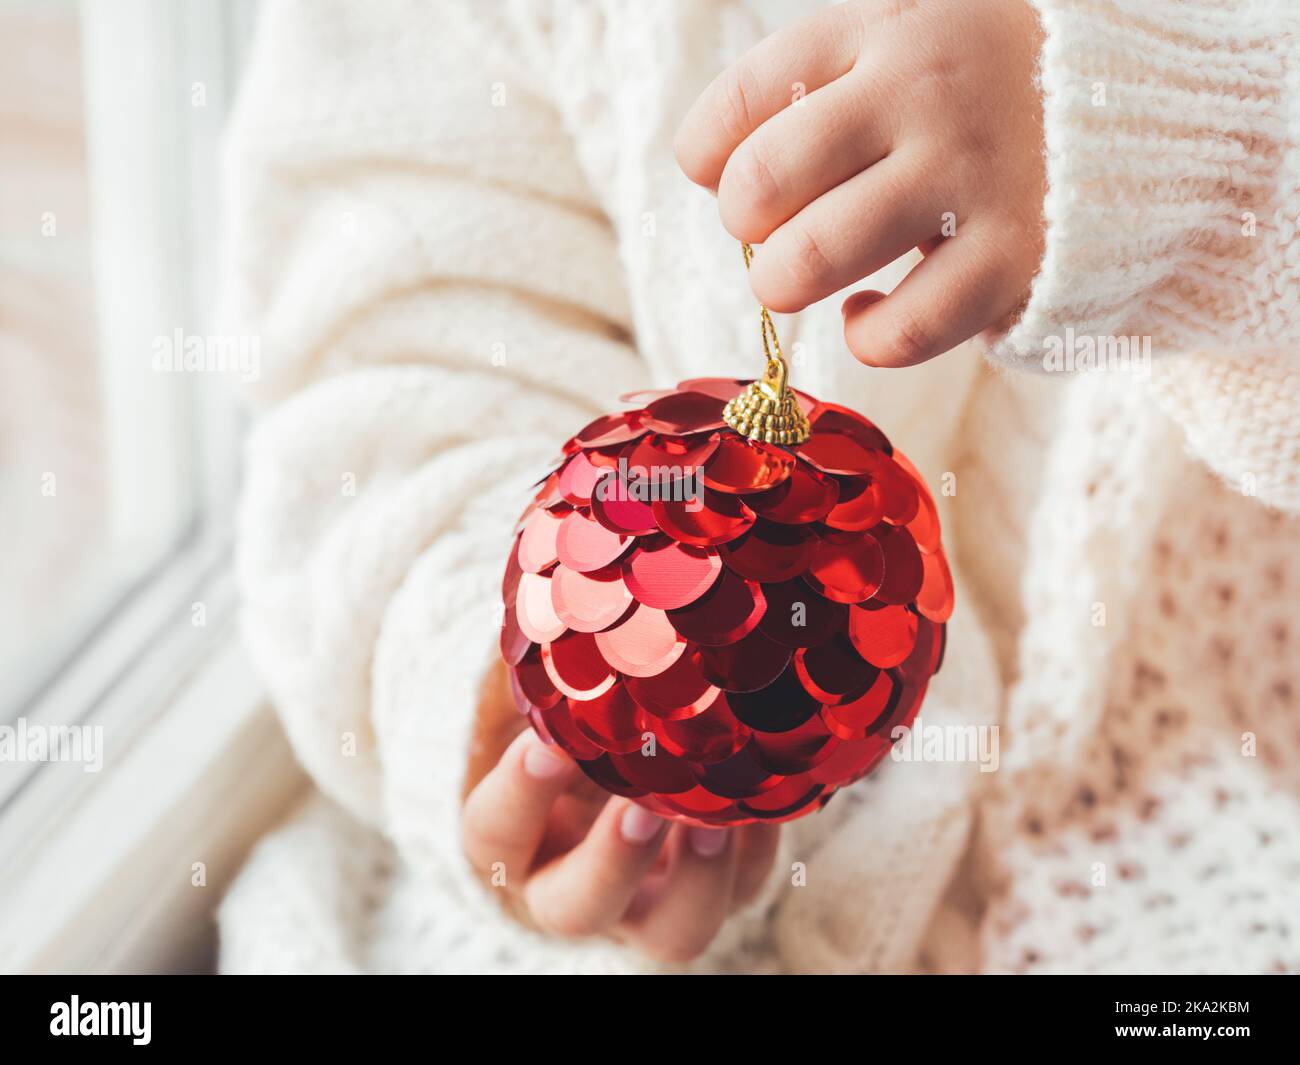 Capretto con sfera decorativa rossa per albero di Natale. Ragazzo in maglia a cavetto oversize. Vestito accogliente per un clima sereno. Lo spirito delle vacanze invernali. Anno nuovo Foto Stock